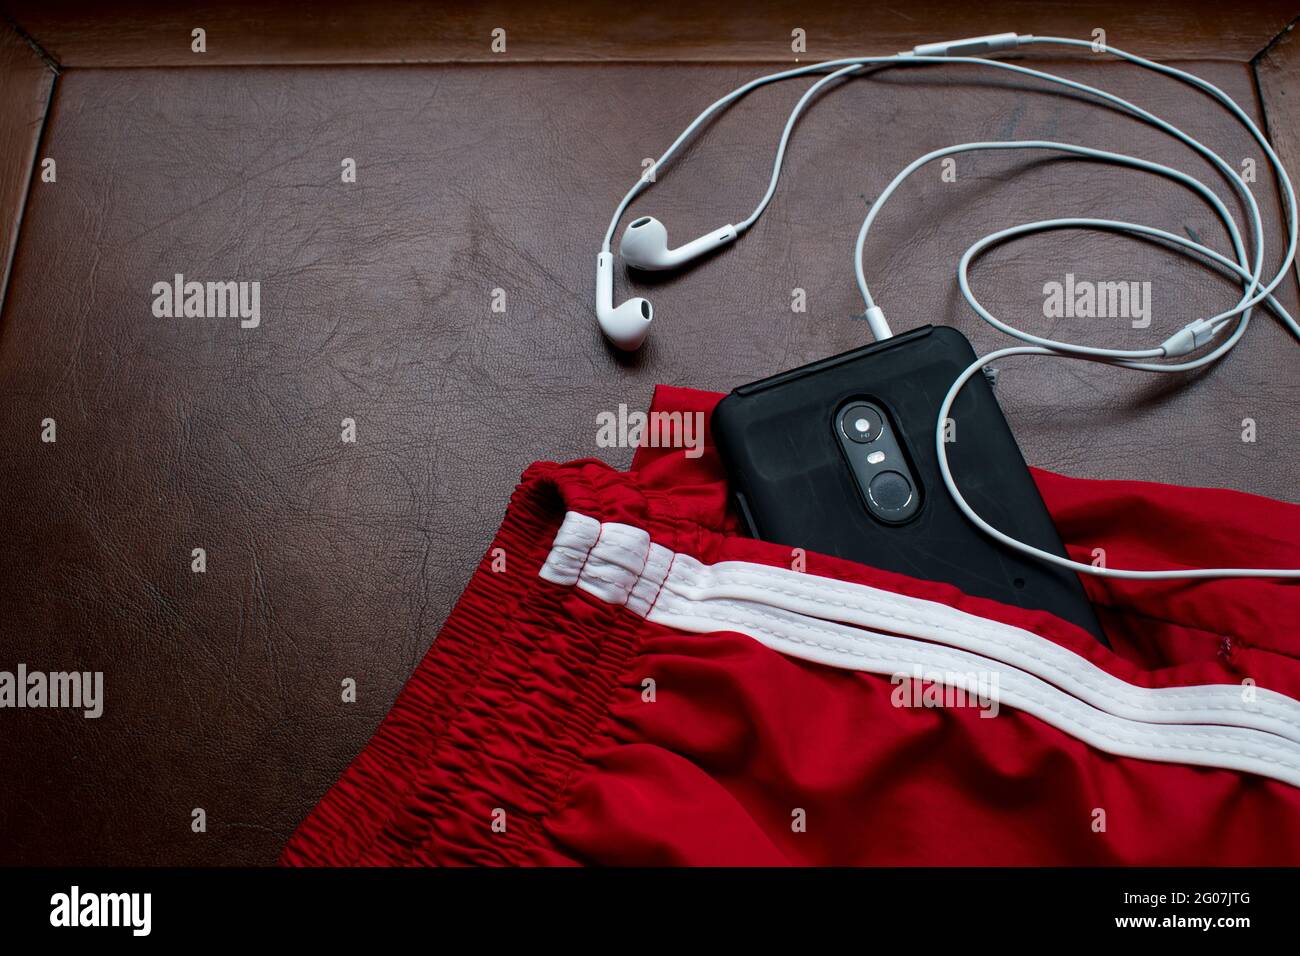 Schwarzes Smartphone, Kopfhörer und rote kurze Hose für den Sommer auf  einem braunen Holztisch Stockfotografie - Alamy